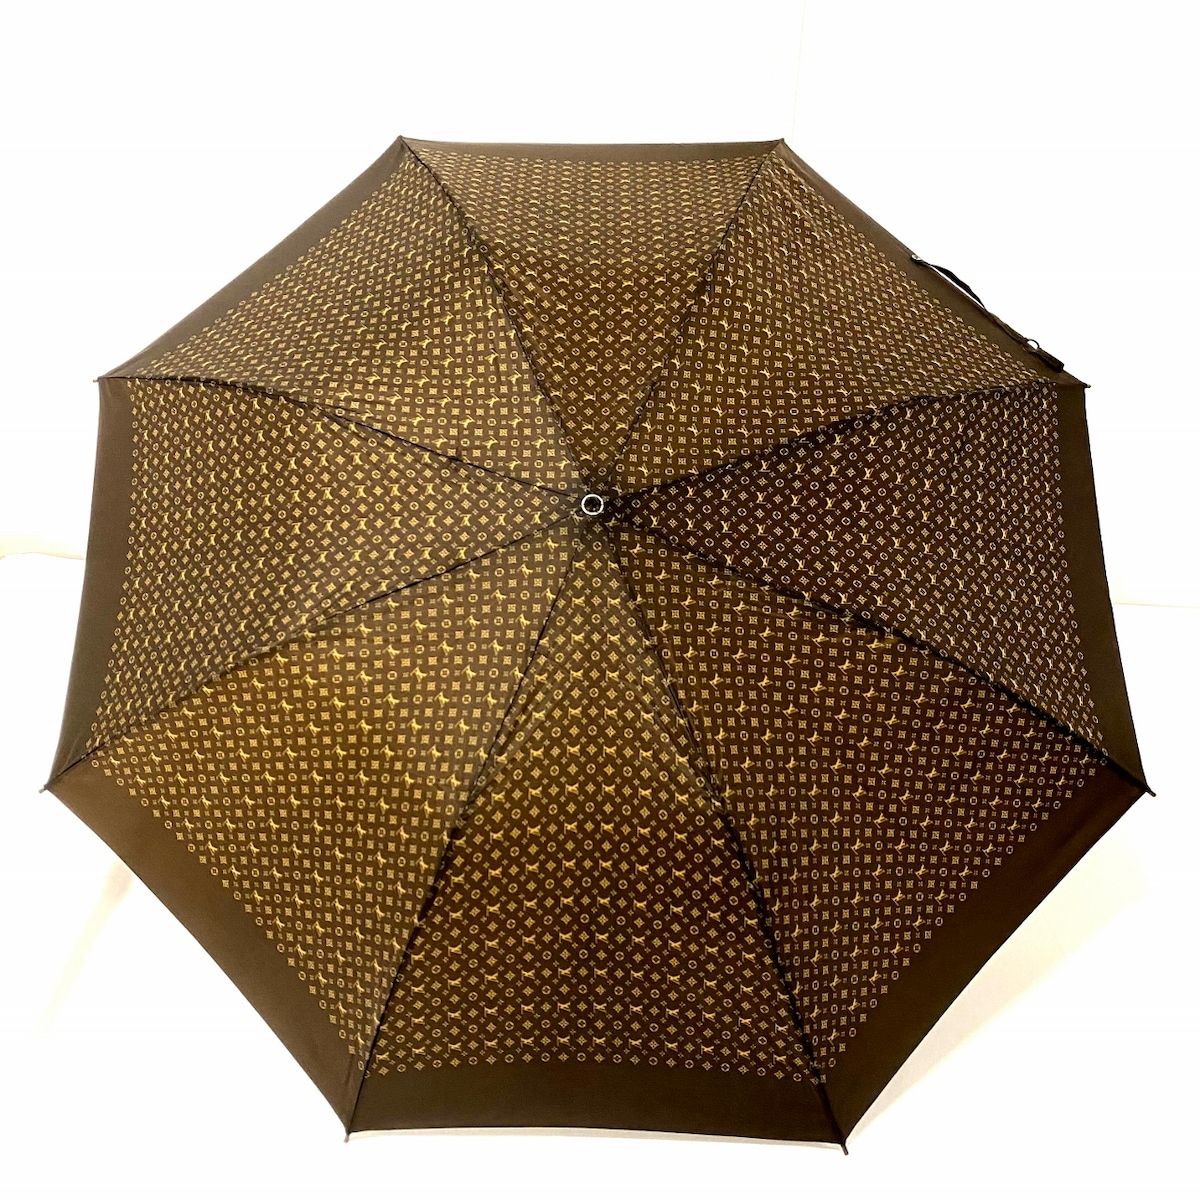 LOUIS VUITTON(ルイヴィトン) 折りたたみ傘 - ダークブラウン 